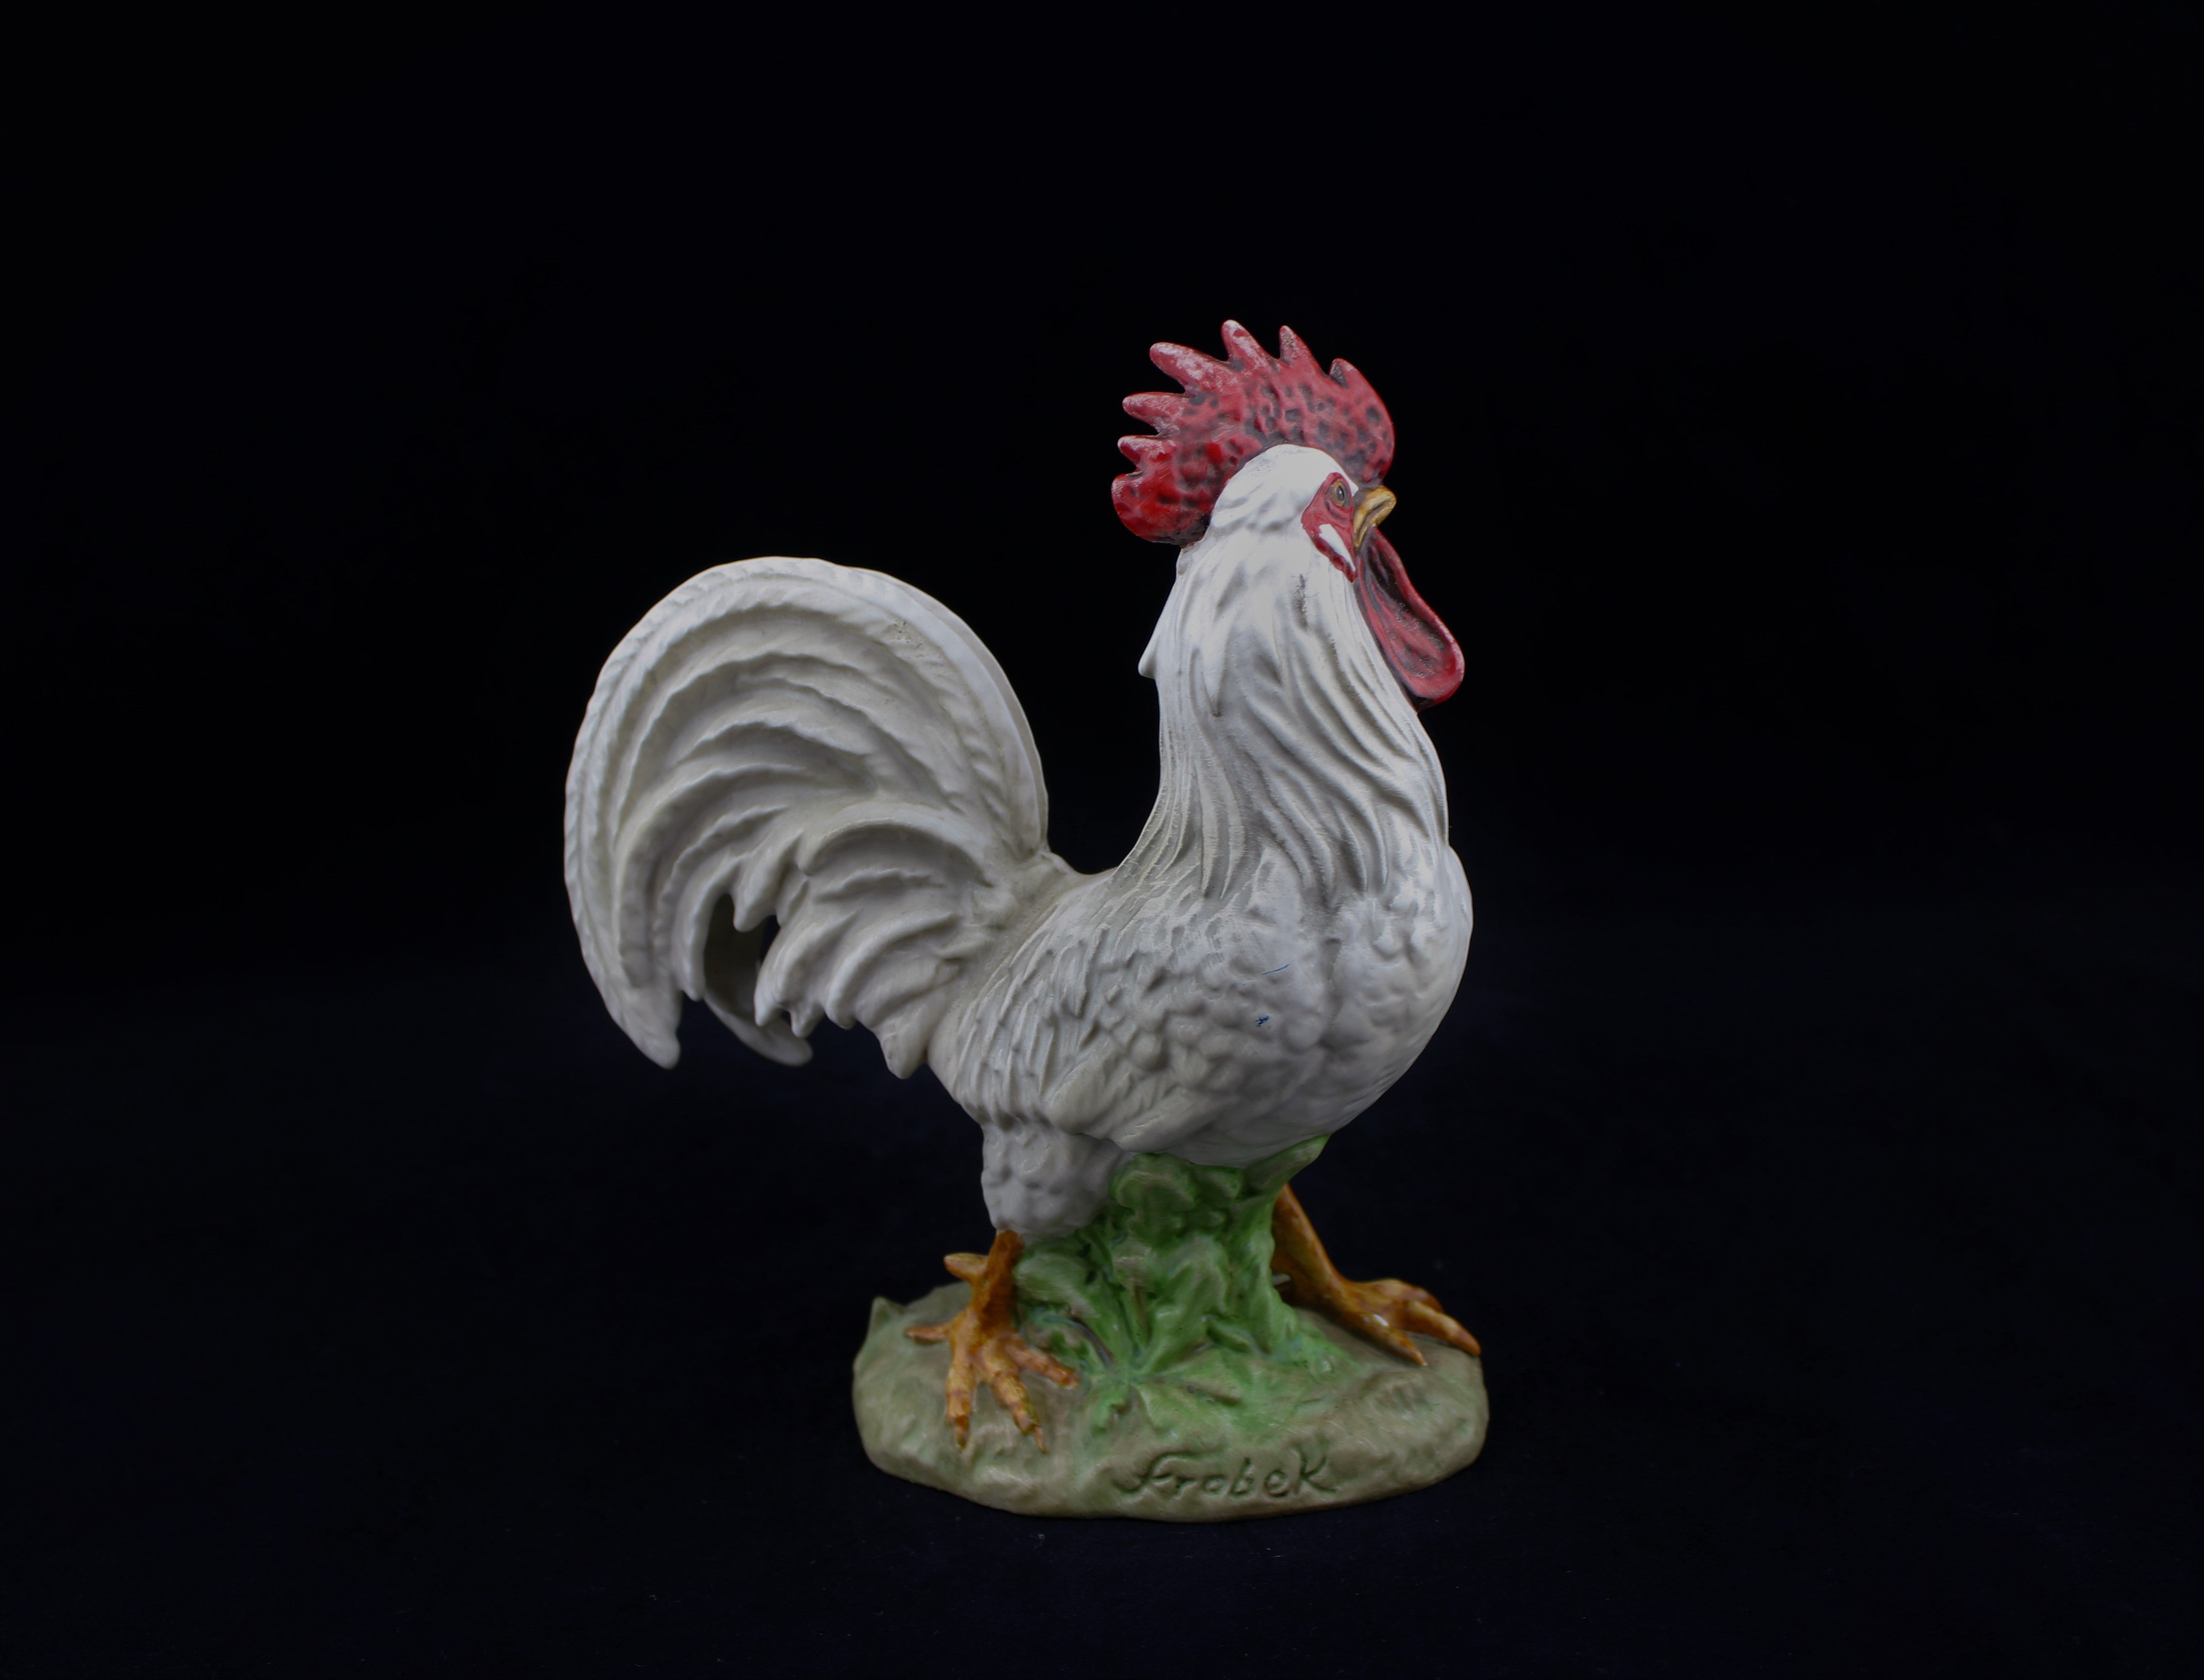 Frobeck Porcelain Rooster